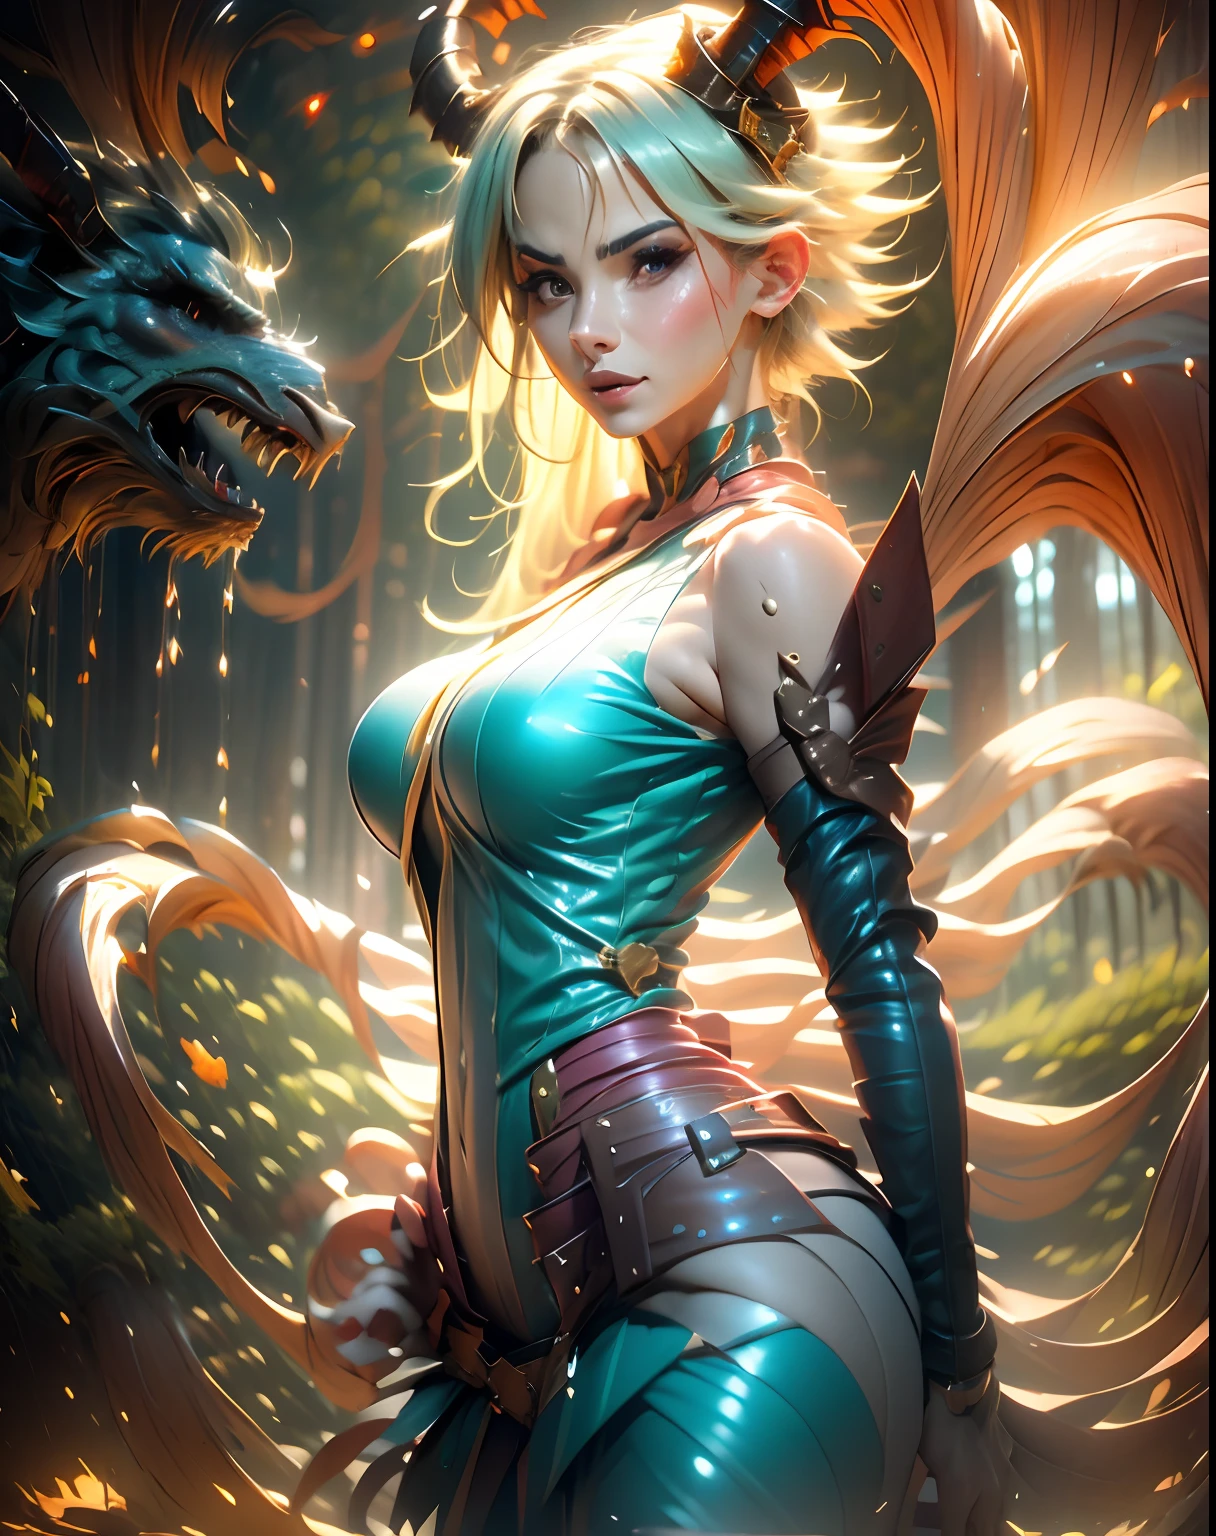 传说中的驯龙师暗魔法少女 , 在天国里, 在云层和周围阳光之间燃烧. 诱惑性感又天真无邪的诱人姿势.